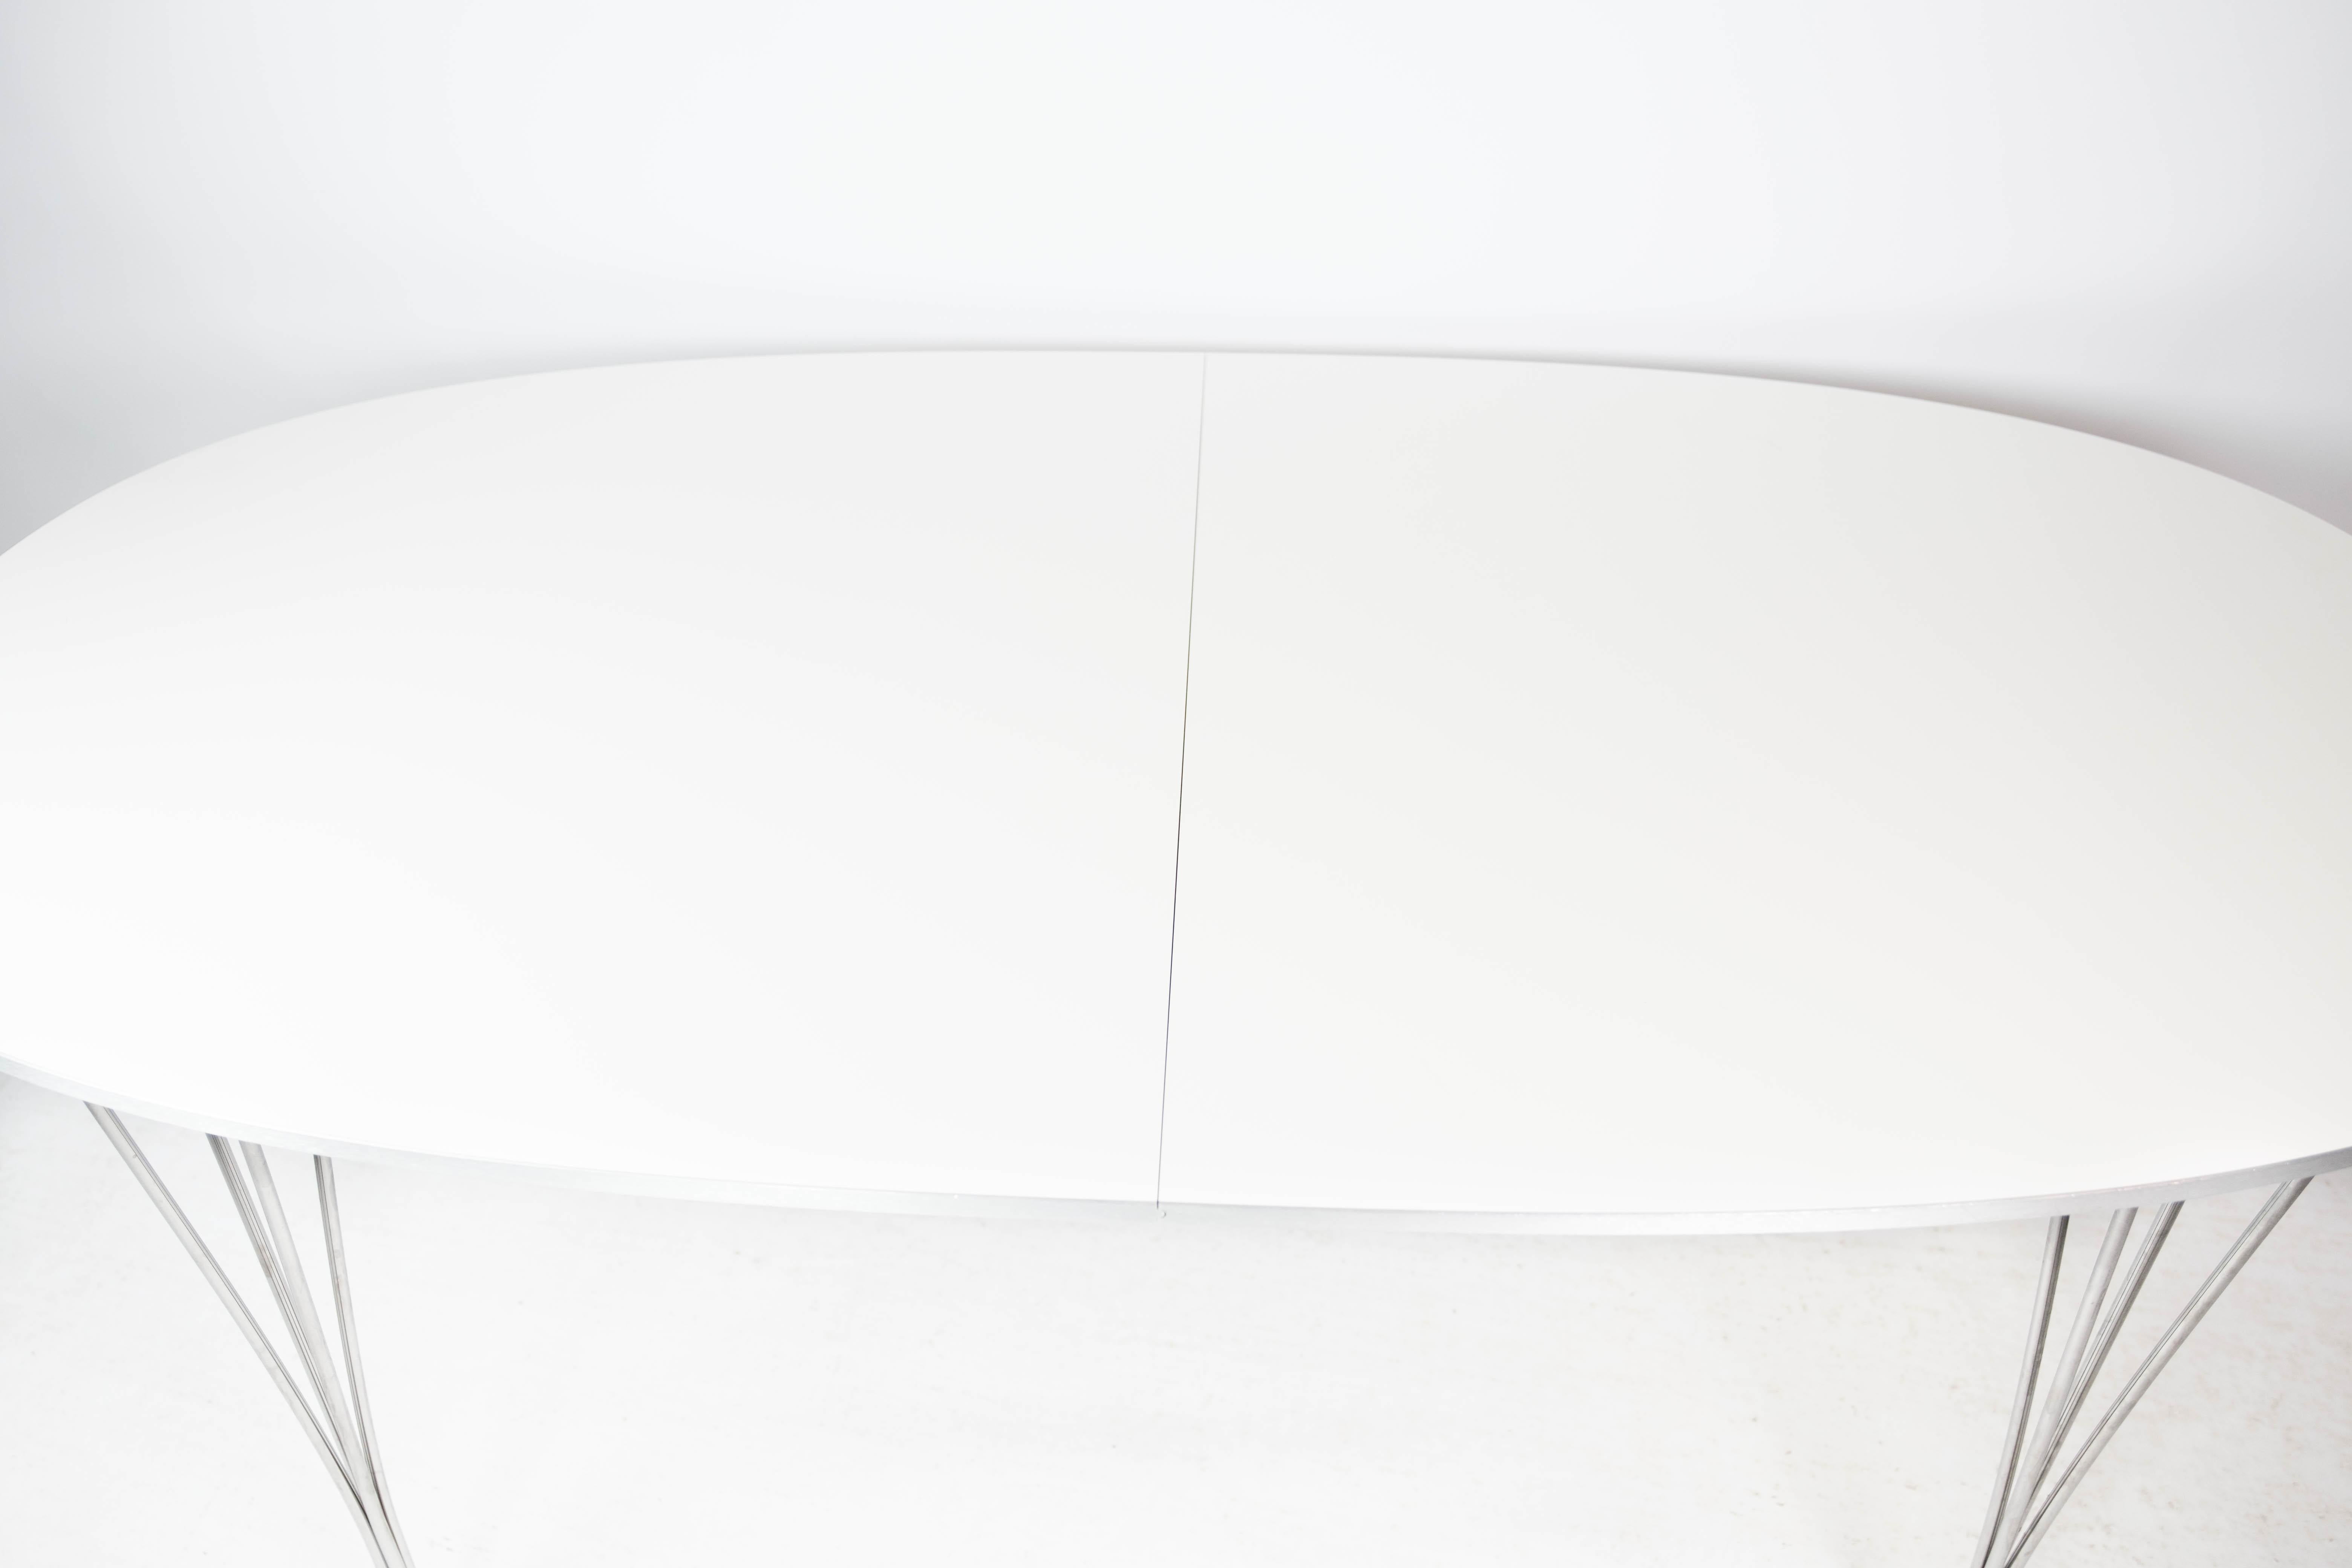 La table de salle à manger Super Ellipse, dotée d'une surface en stratifié blanc, est le fruit d'une étonnante collaboration entre les célèbres designers Piet Hein et Arne Jacobsen, concrétisée par Fritz Hansen en 2011. Cette pièce emblématique